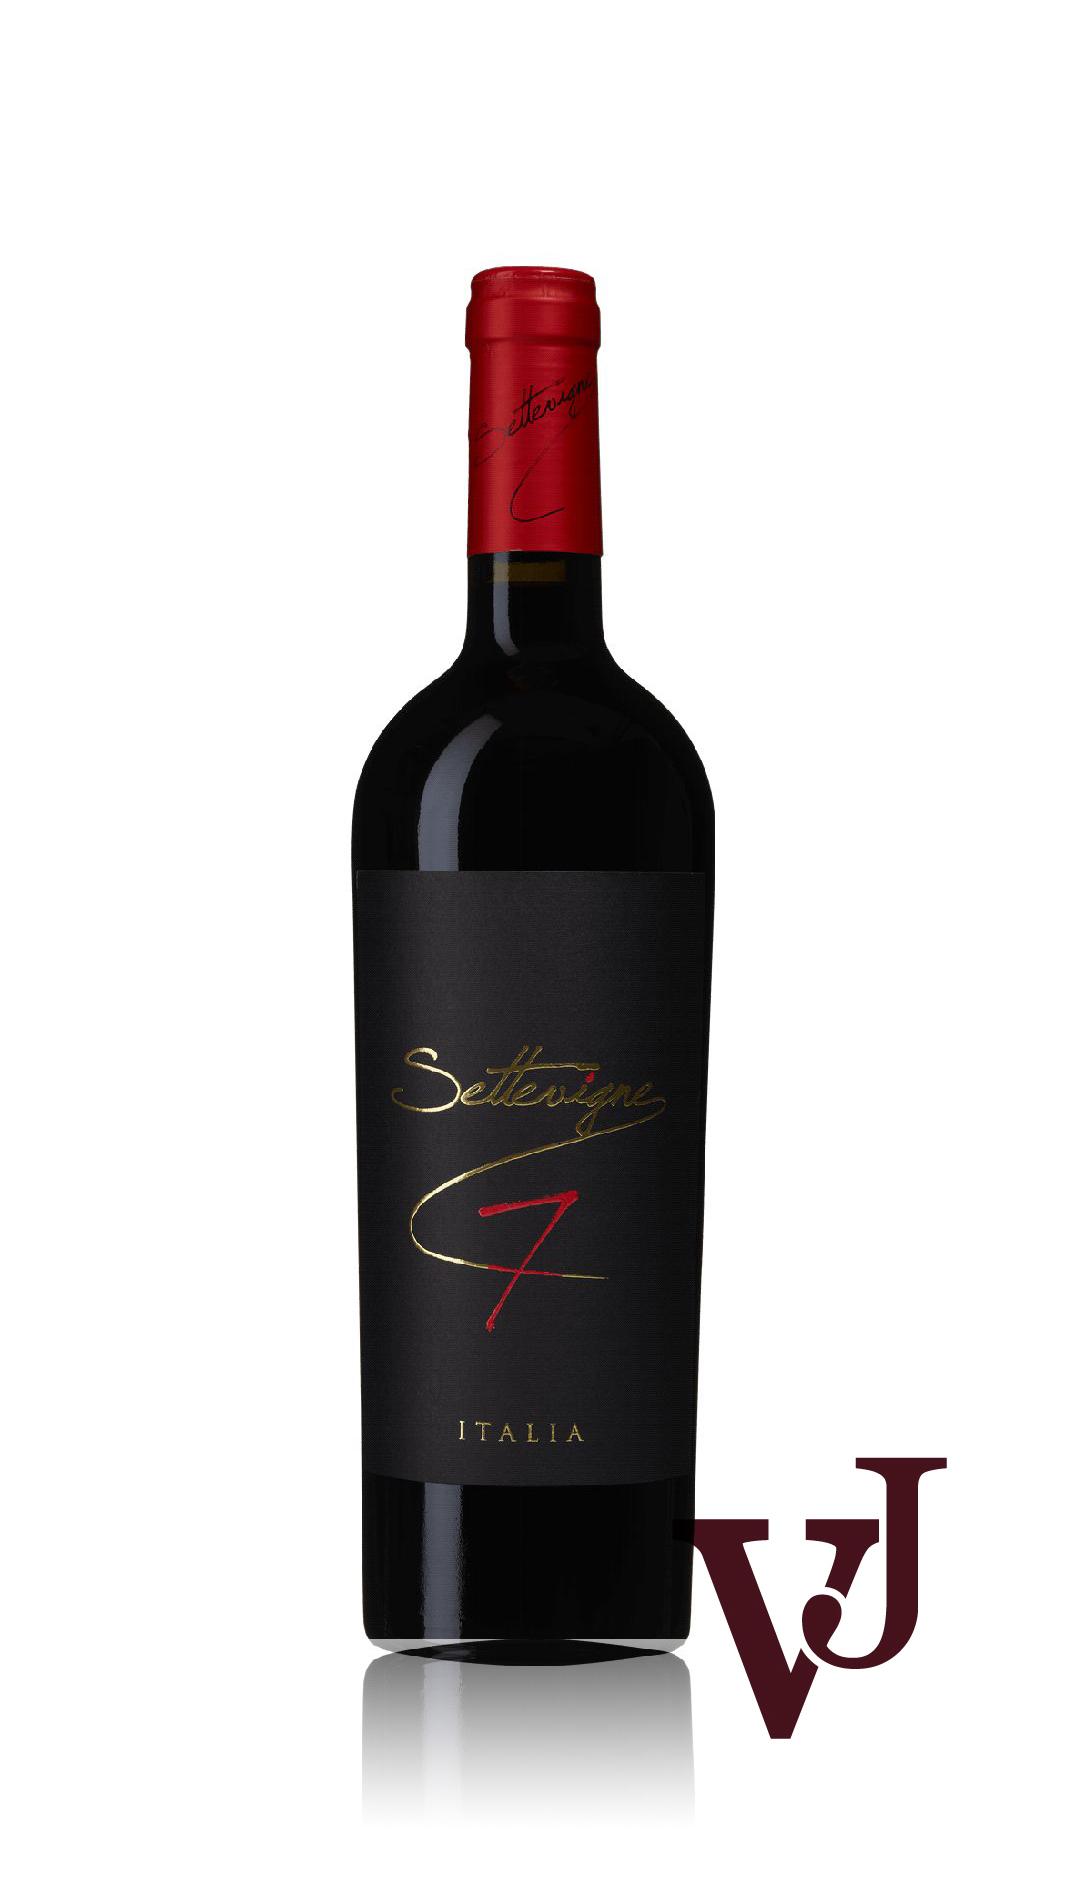 Rött Vin - Settevigne 7 Vino Rosso 2021 artikel nummer 7020701 från producenten Orion Wines från området Italien.